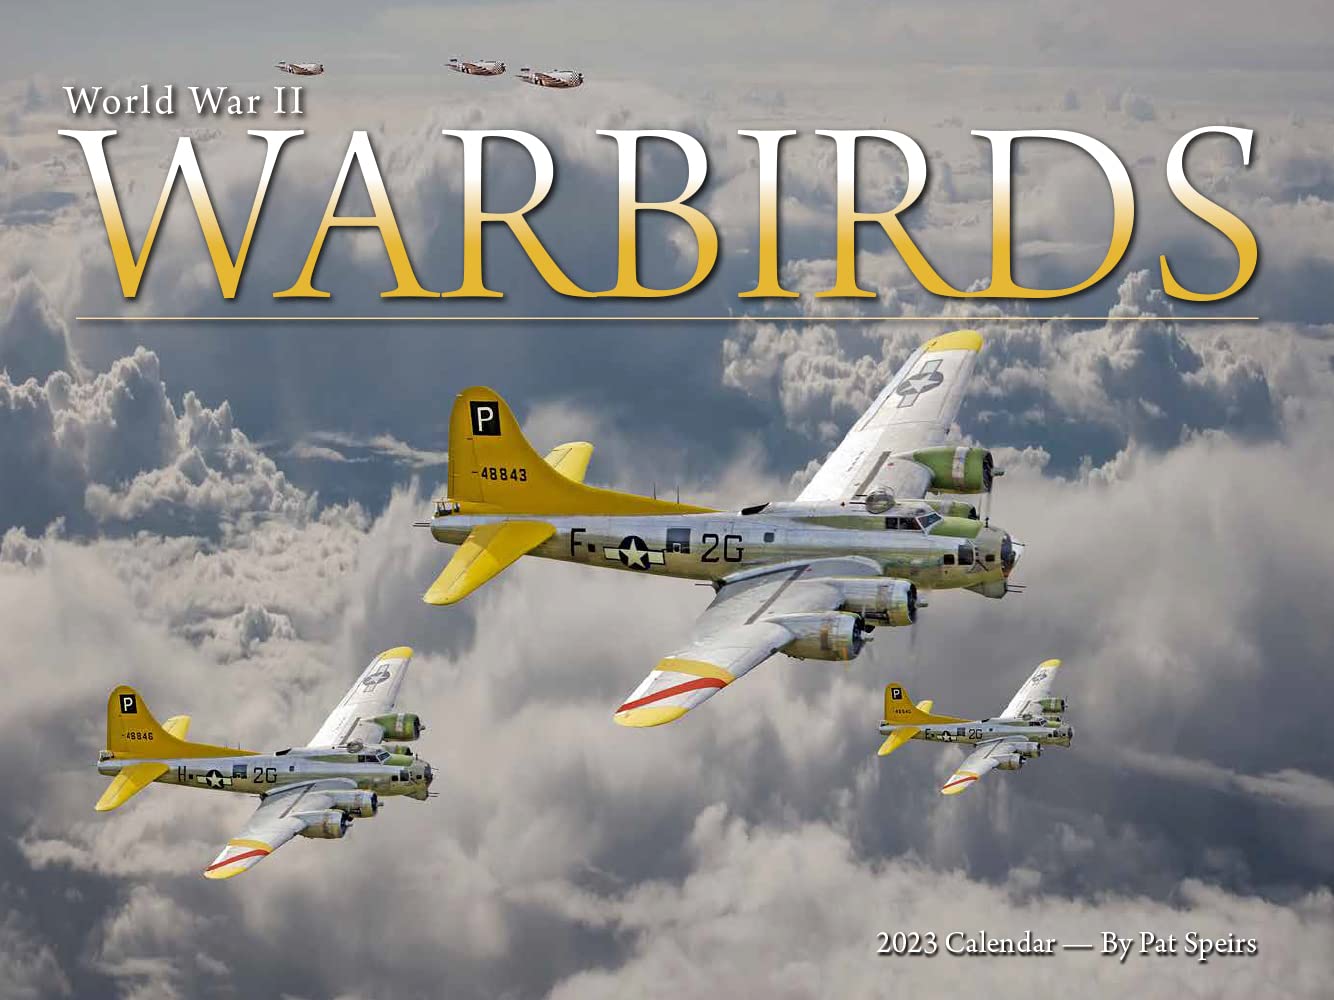 Warbirds of WWII 2023 Wall Calendar